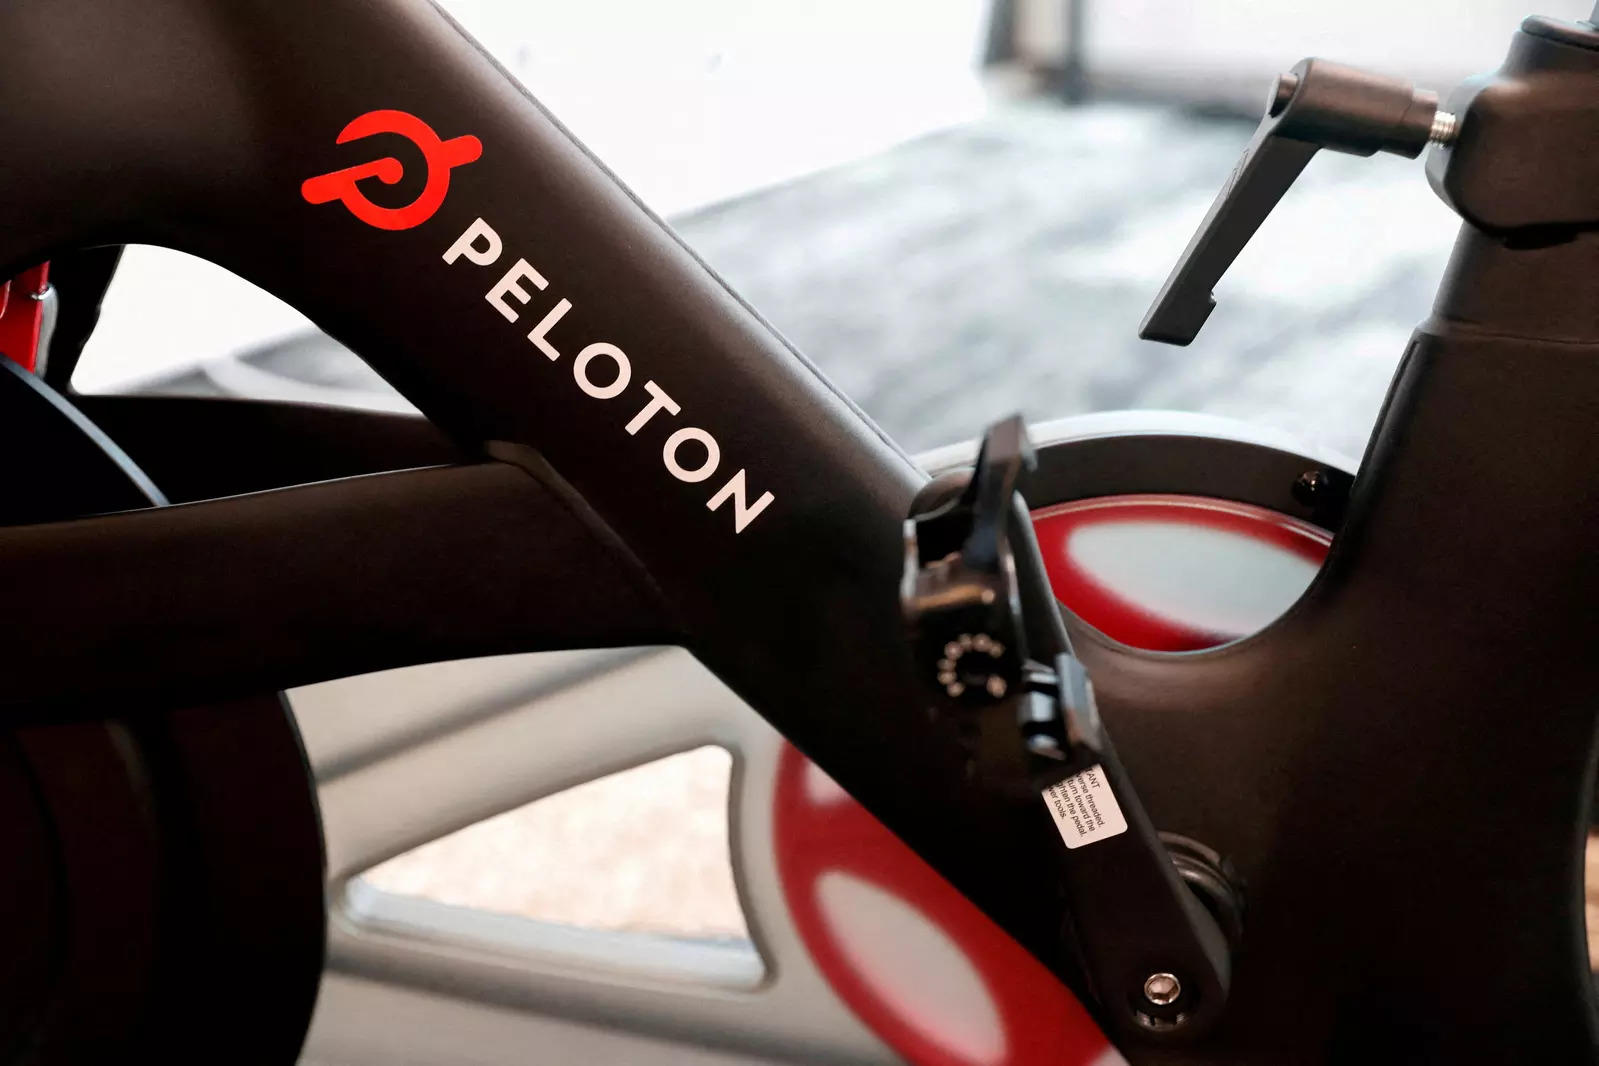 Peloton to sell exercise bikes on Amazon UK to improve demand